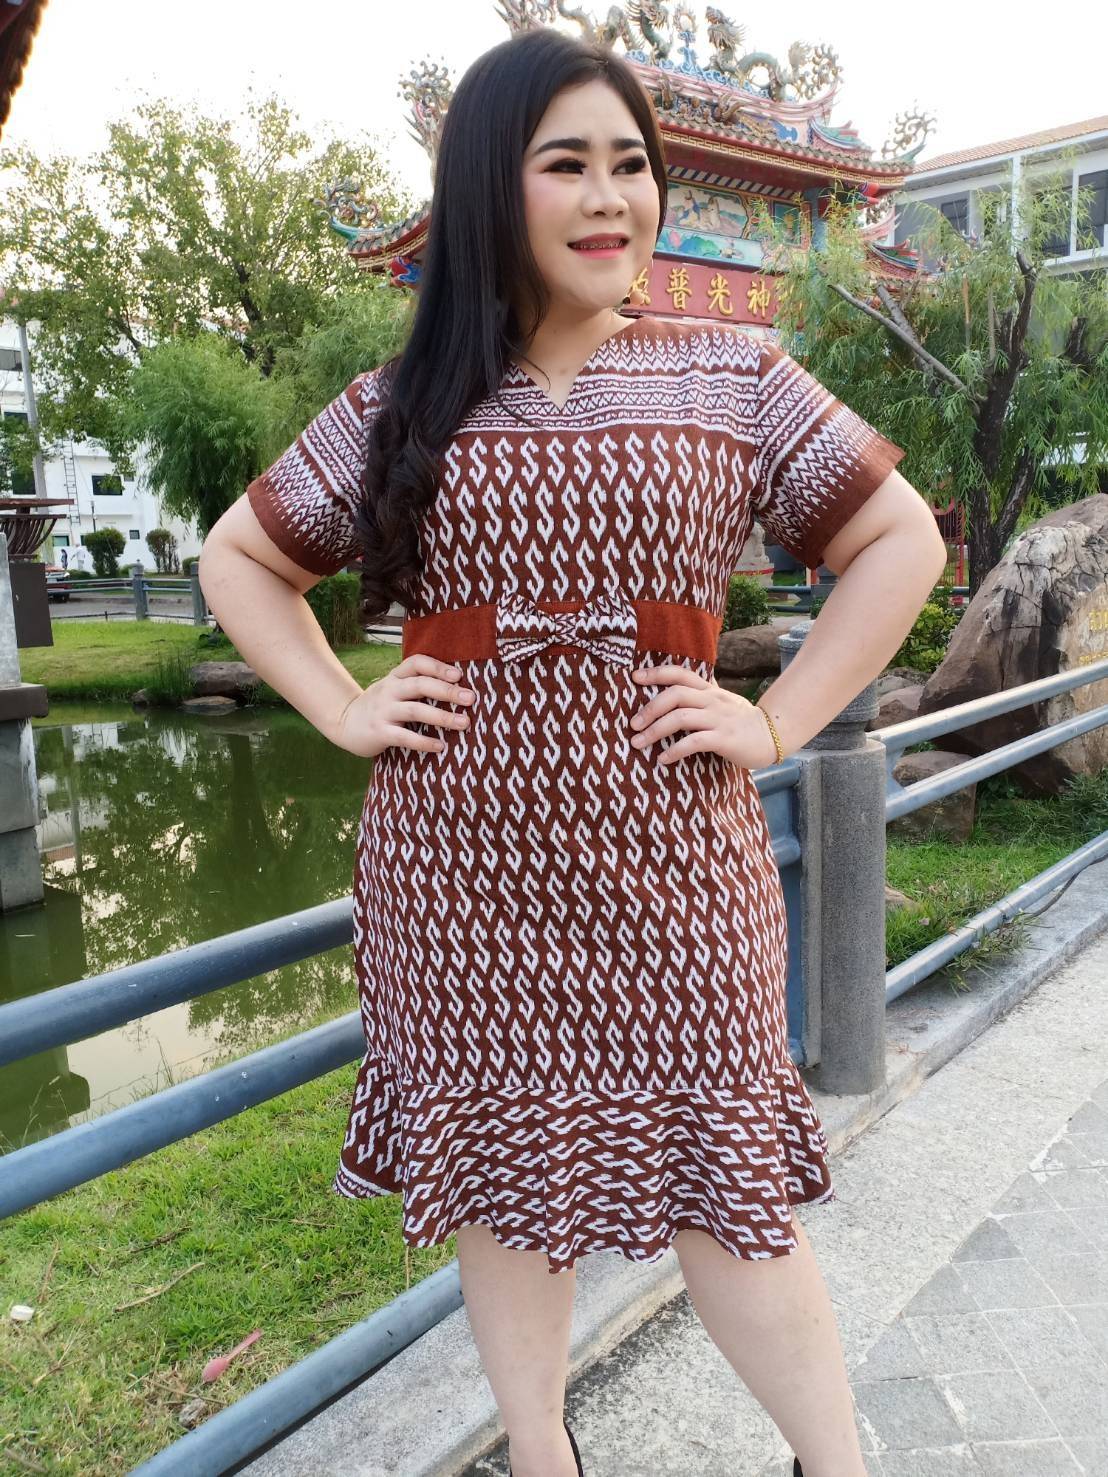 ชุดเดรสไซส์ใหญ่ รอบอก 44 นิ้ว เสื้อคนอ้วน ชุดเดรสออกงานคนอ้วน  ผ้าฝ้ายพิมพ์ลาย สีน้ำตาล - ชุดเดรสบ้านสาวอวบอ้วน ออนไลน์ - Thaipick